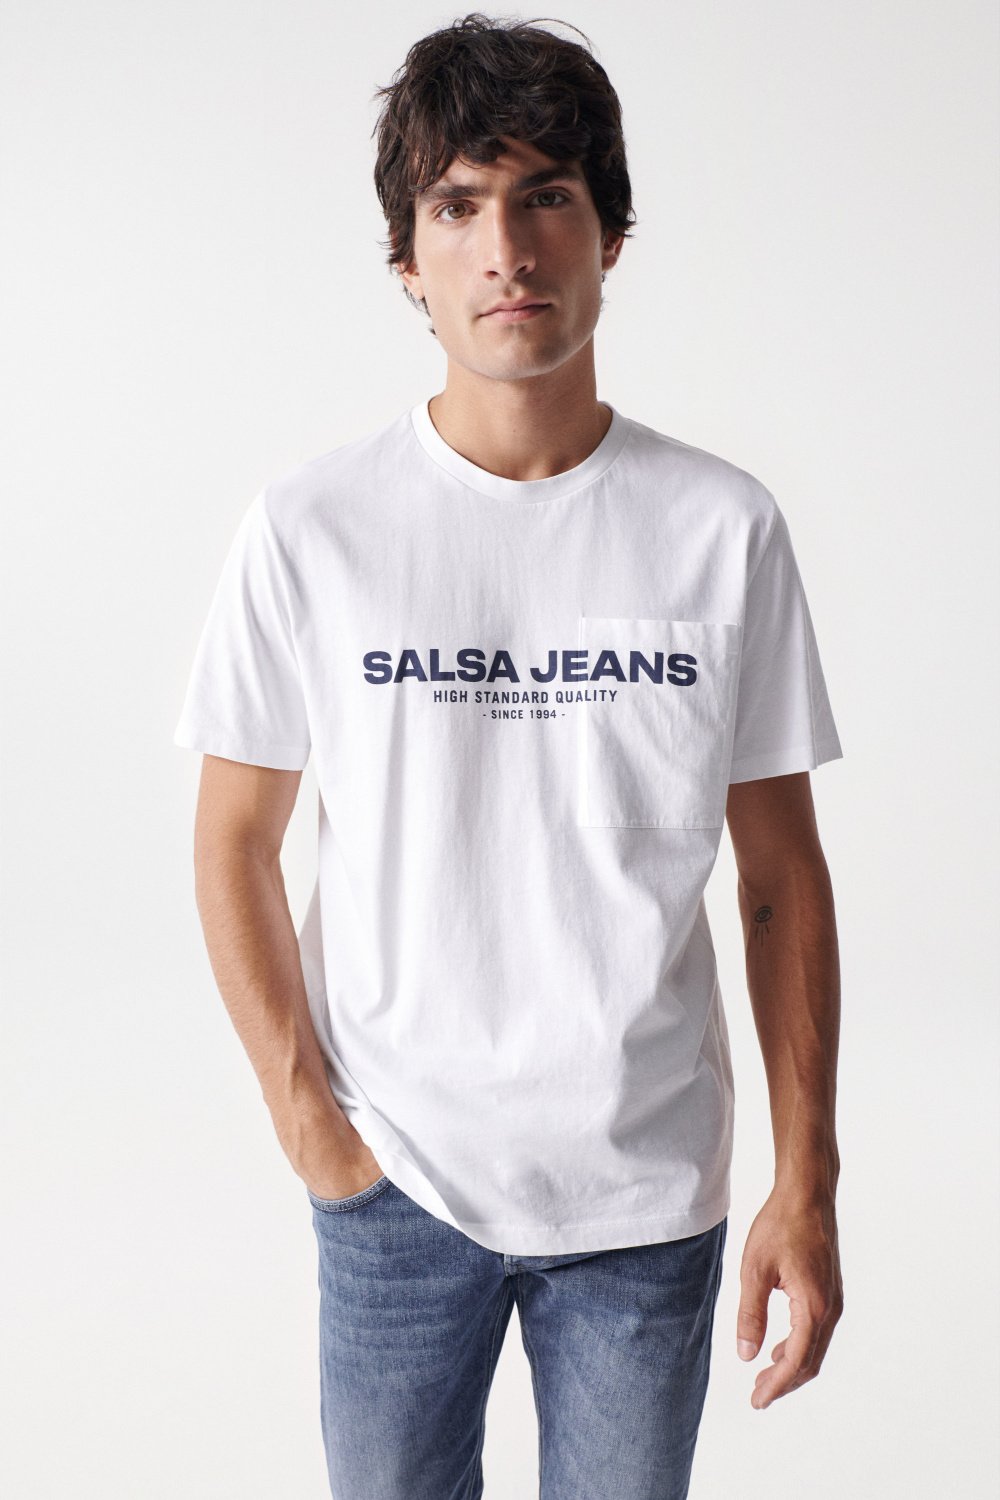 REGULAR T-SHIRT WITH SALSA NAME - Salsa